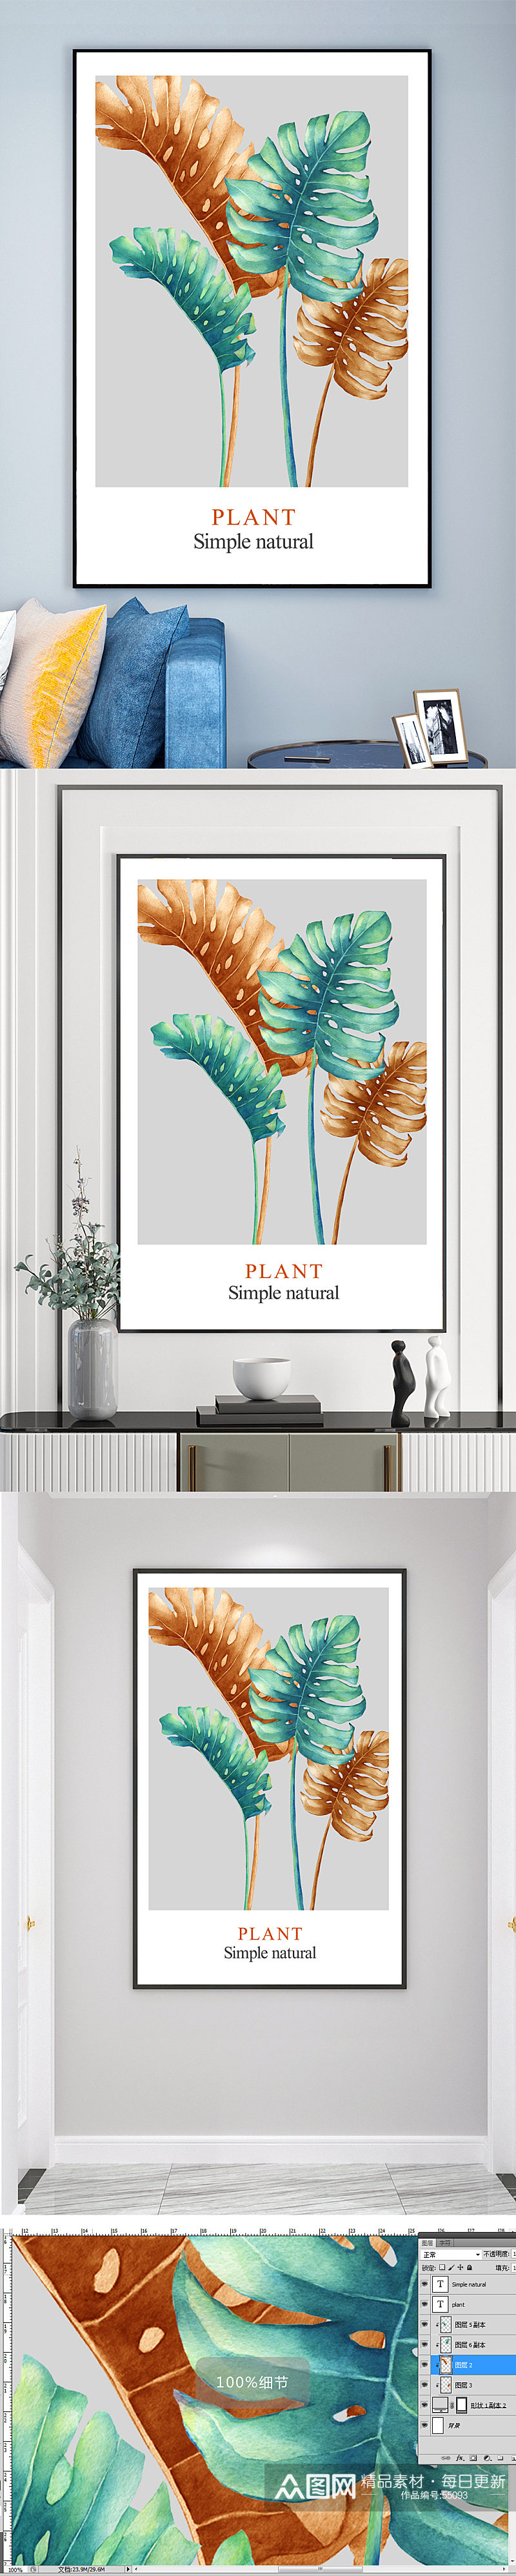 现代简约热带植物装饰画素材